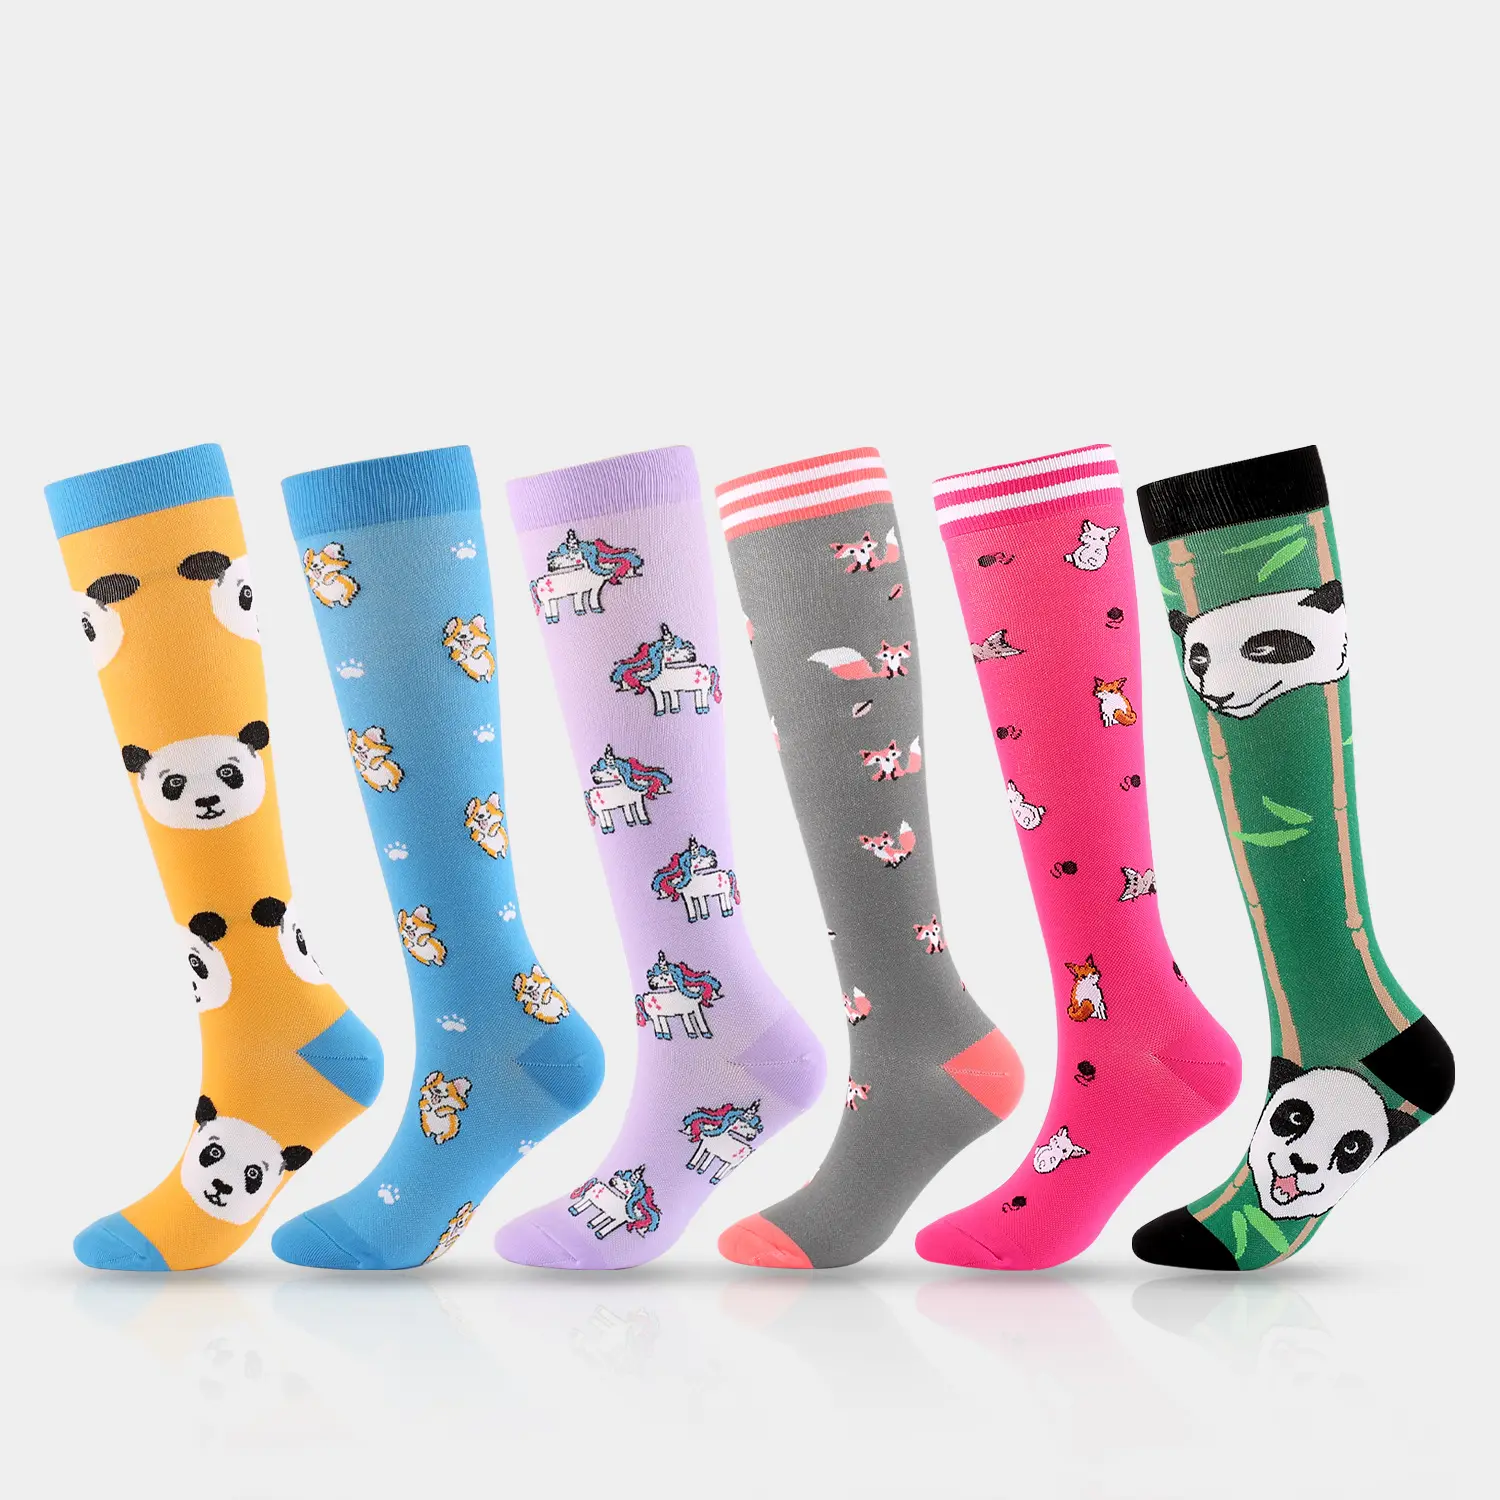 Unisex toptan moda sıkıştırma uzun tayt çorap jakarlı hayvan desenleri ile, futbol bisiklet için sevimli atletik çorap